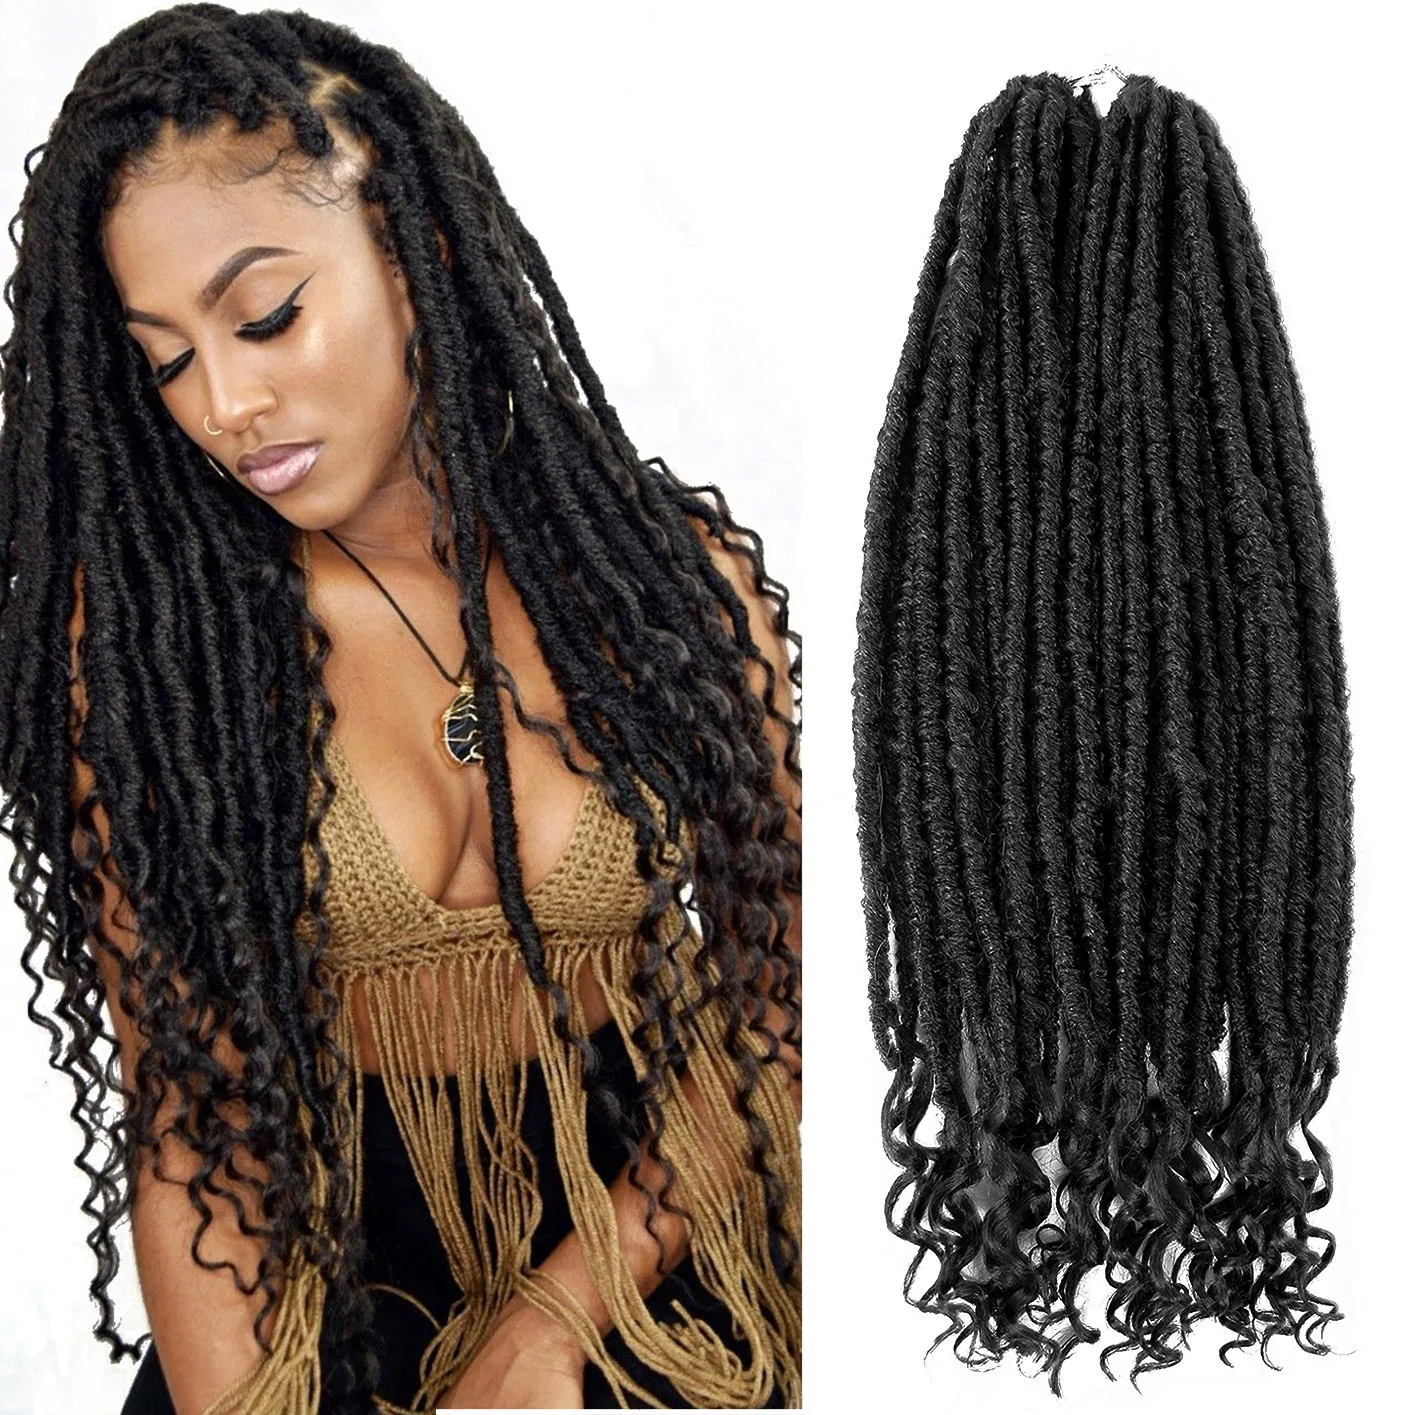 Богиня волосы искусственные локоны в стиле Crochet косы 18 дюймов 20 корней мягкие